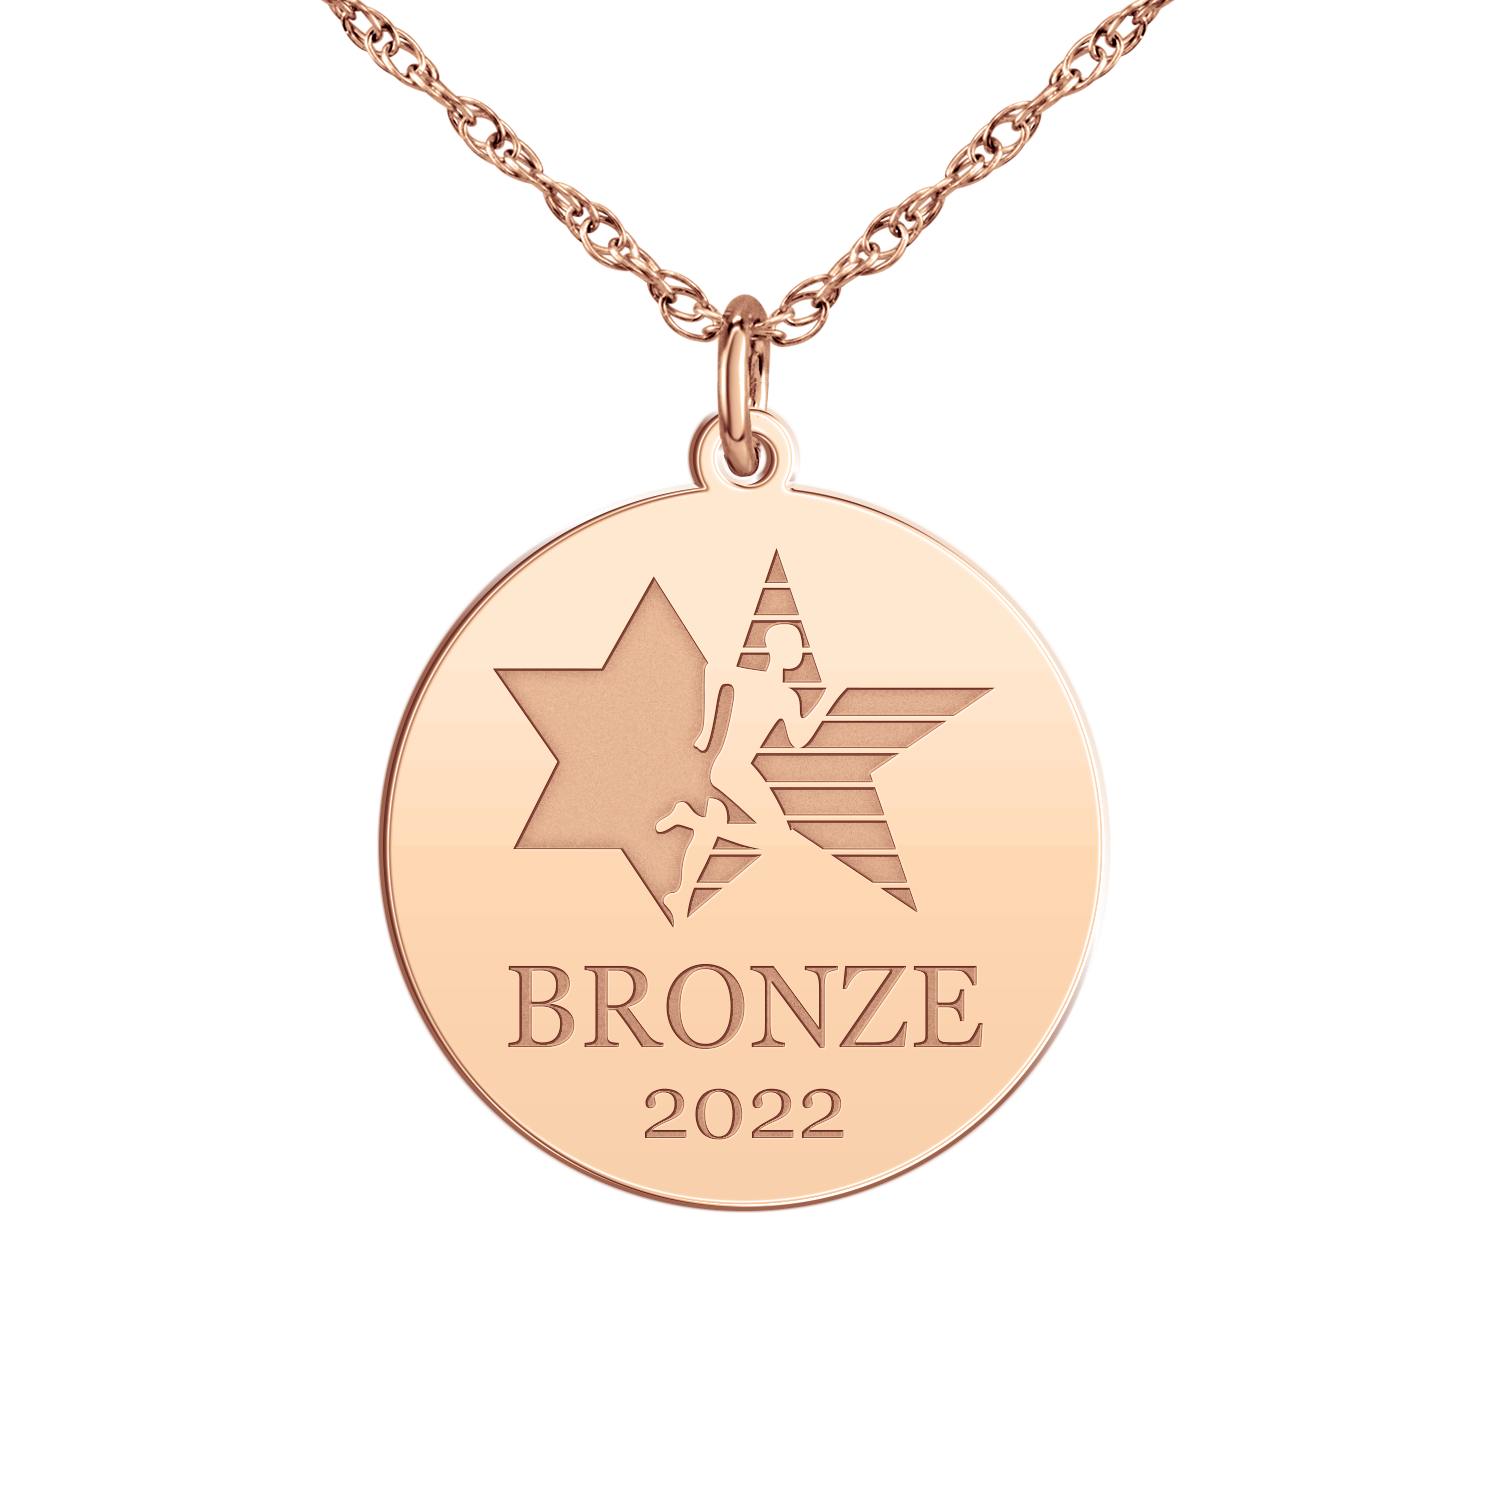 Maccabi BRONZE Medal Disc